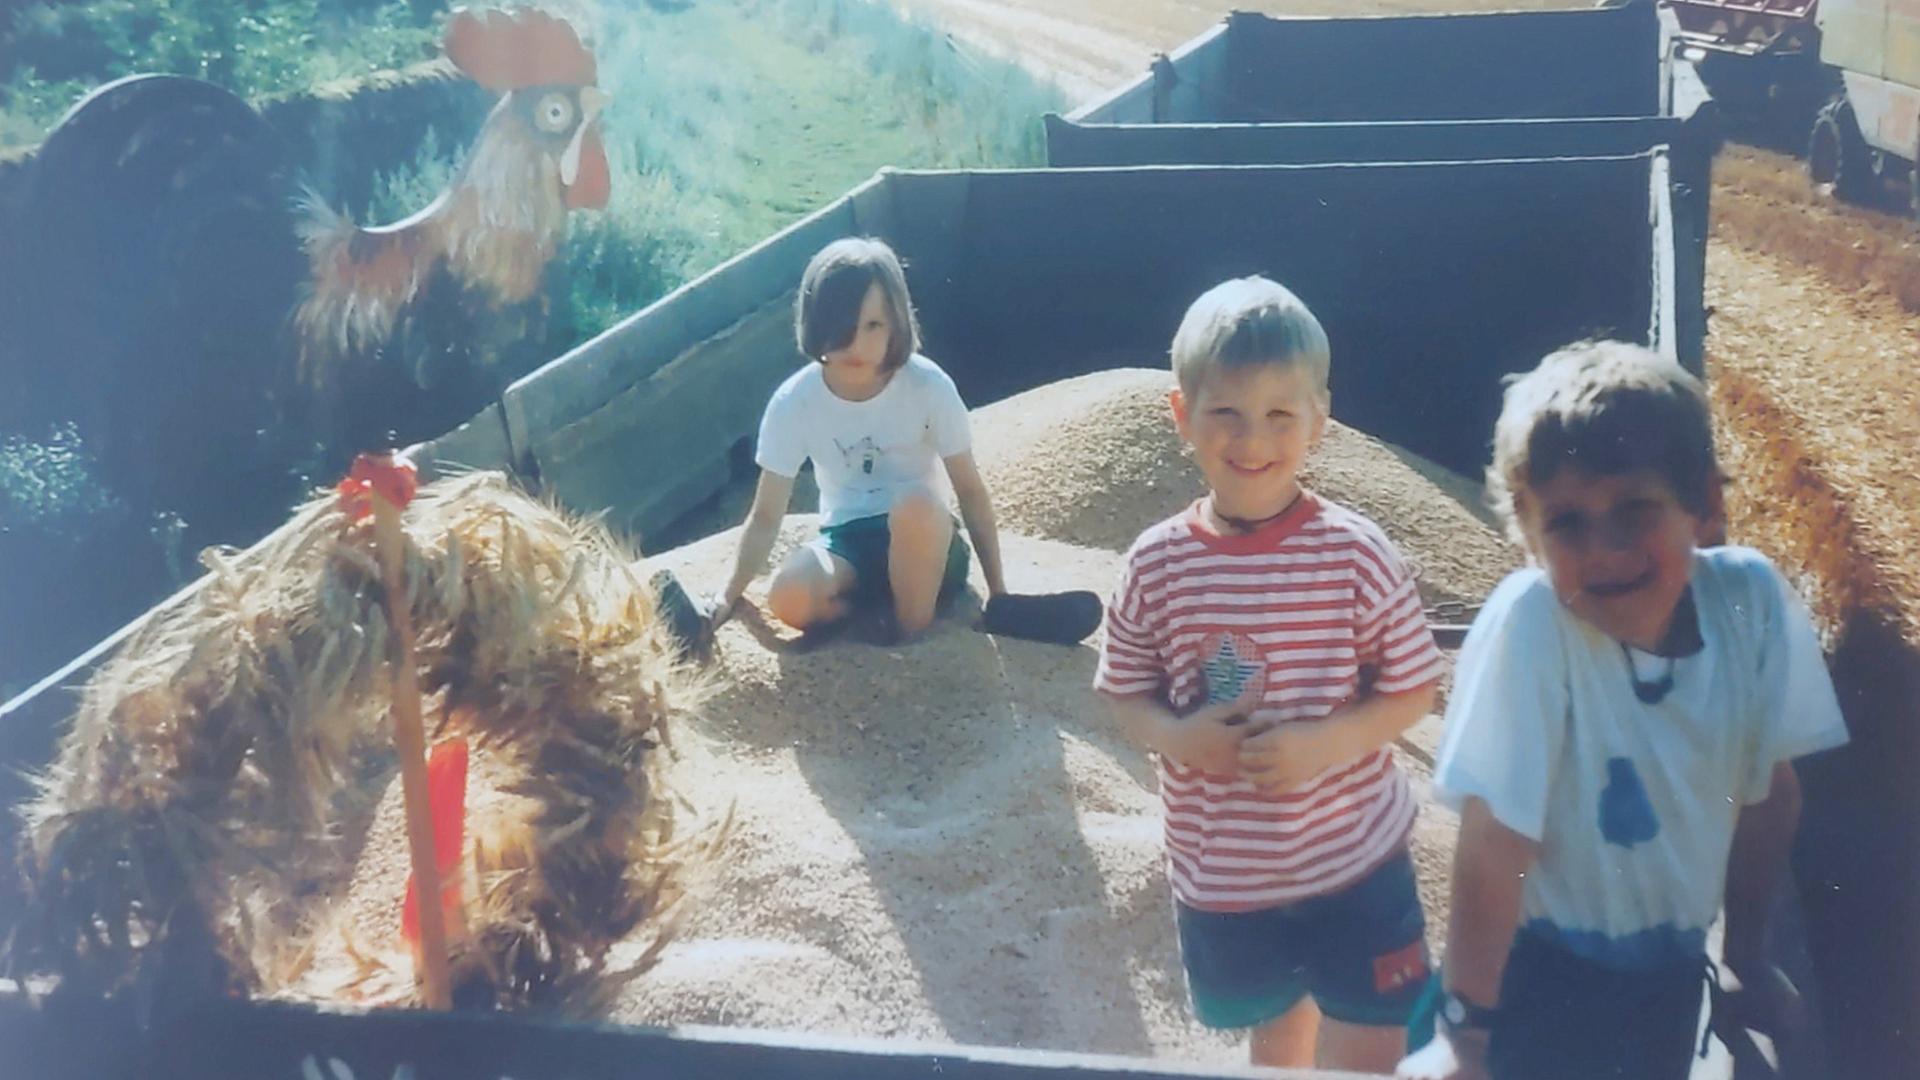 Kinder auf einem Getreideanhänger in einem Bauernhof.